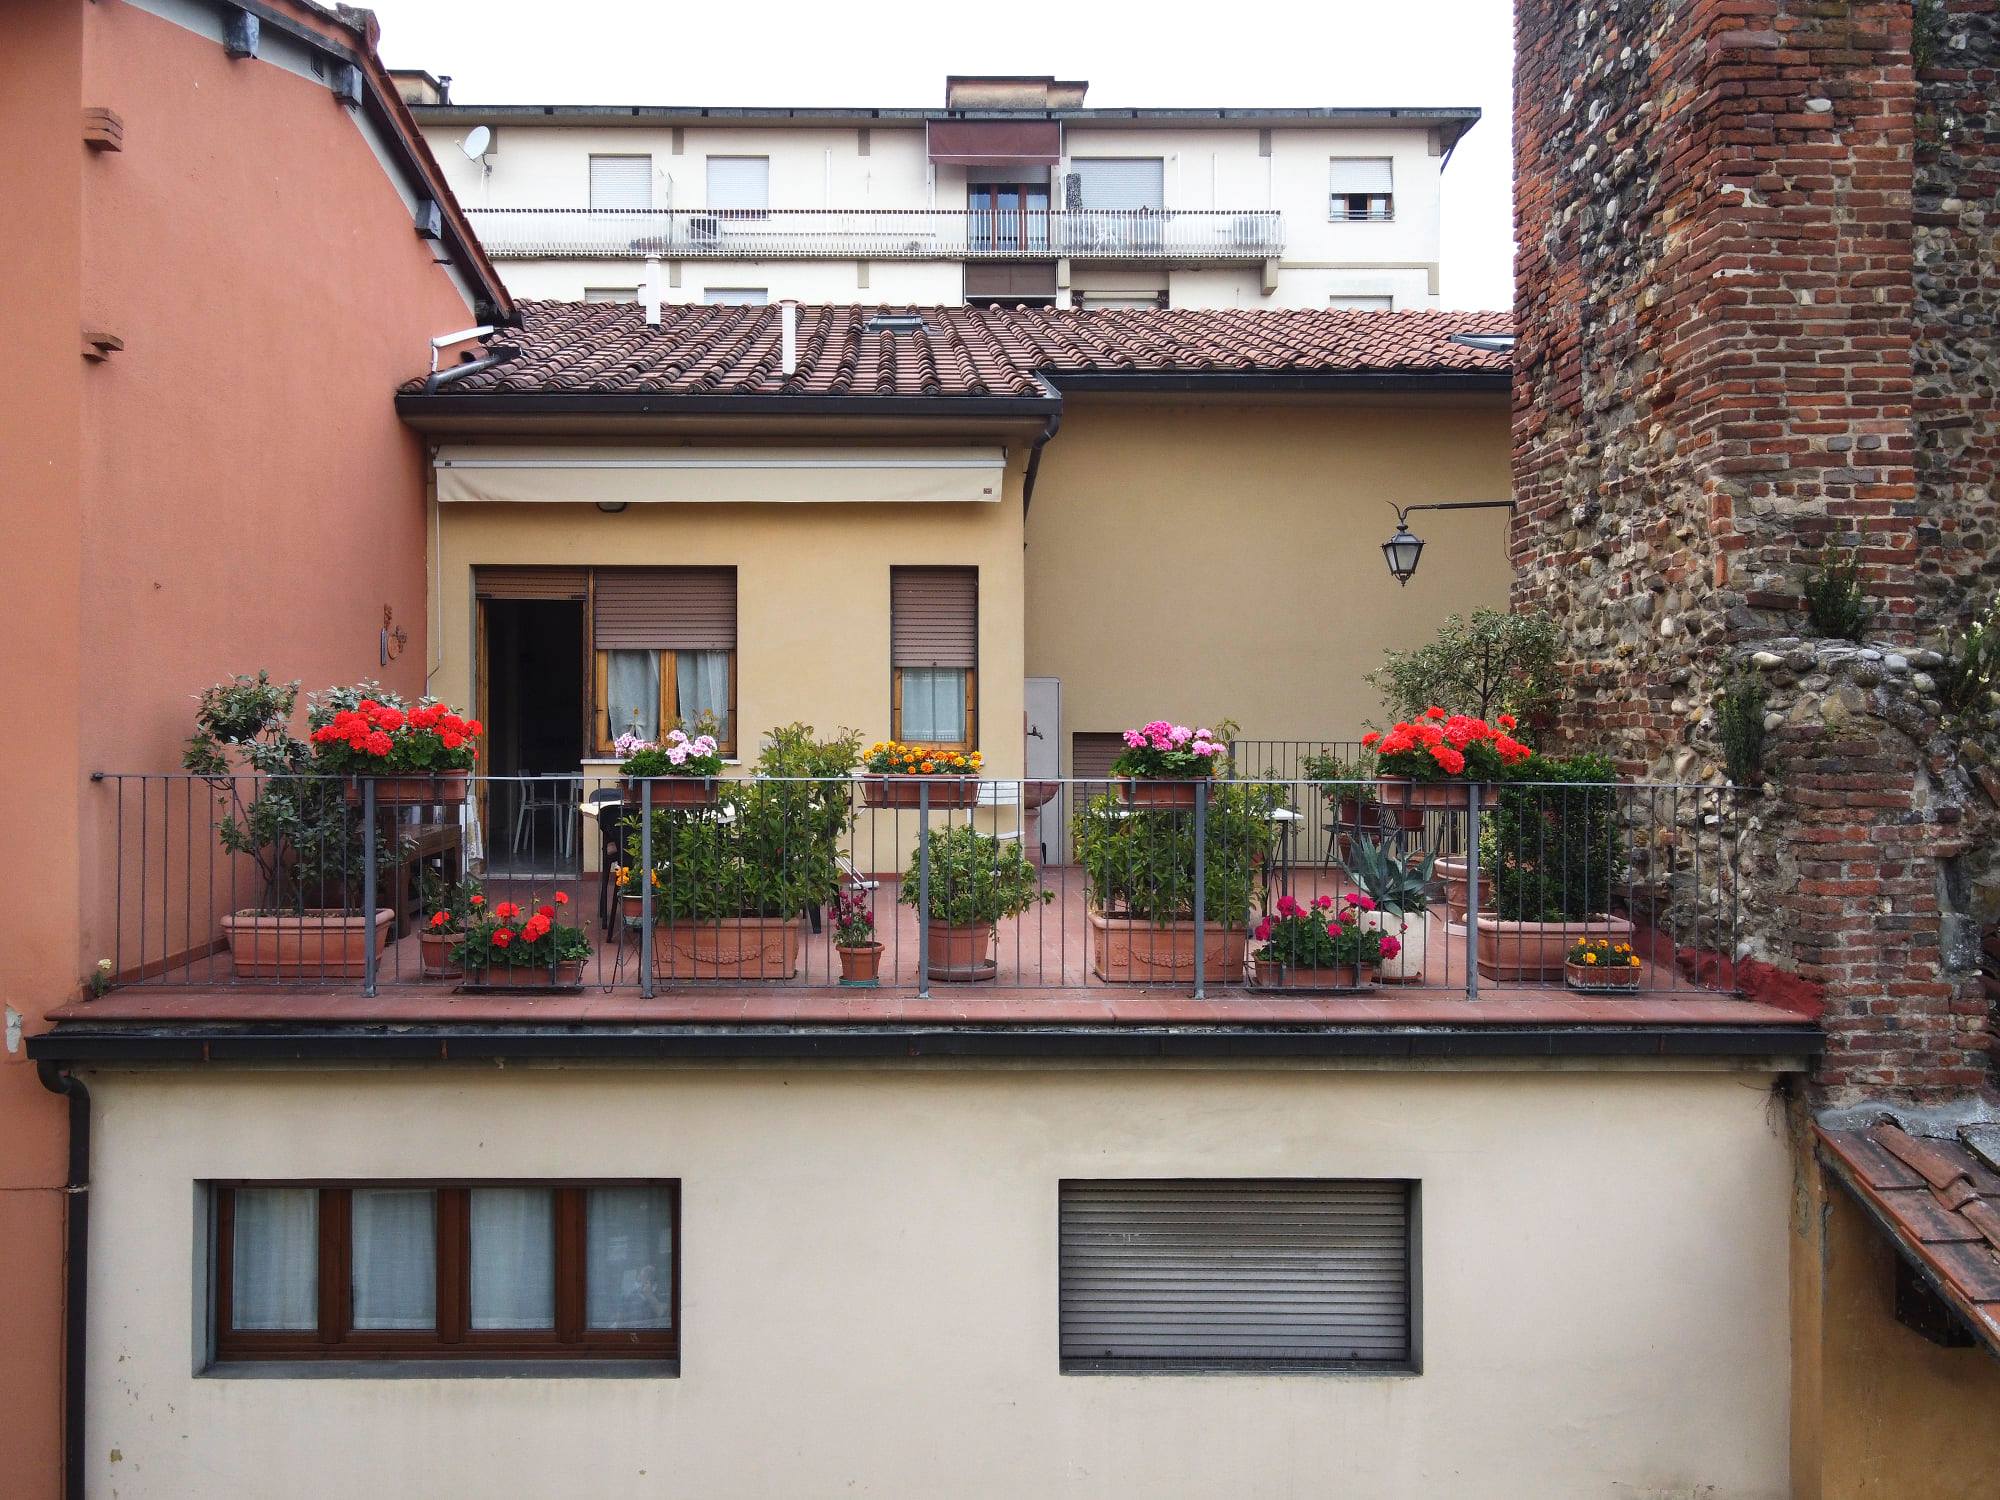 Anche quest’anno a San Giovanni “sbocciano i balconi”: in tutta la città